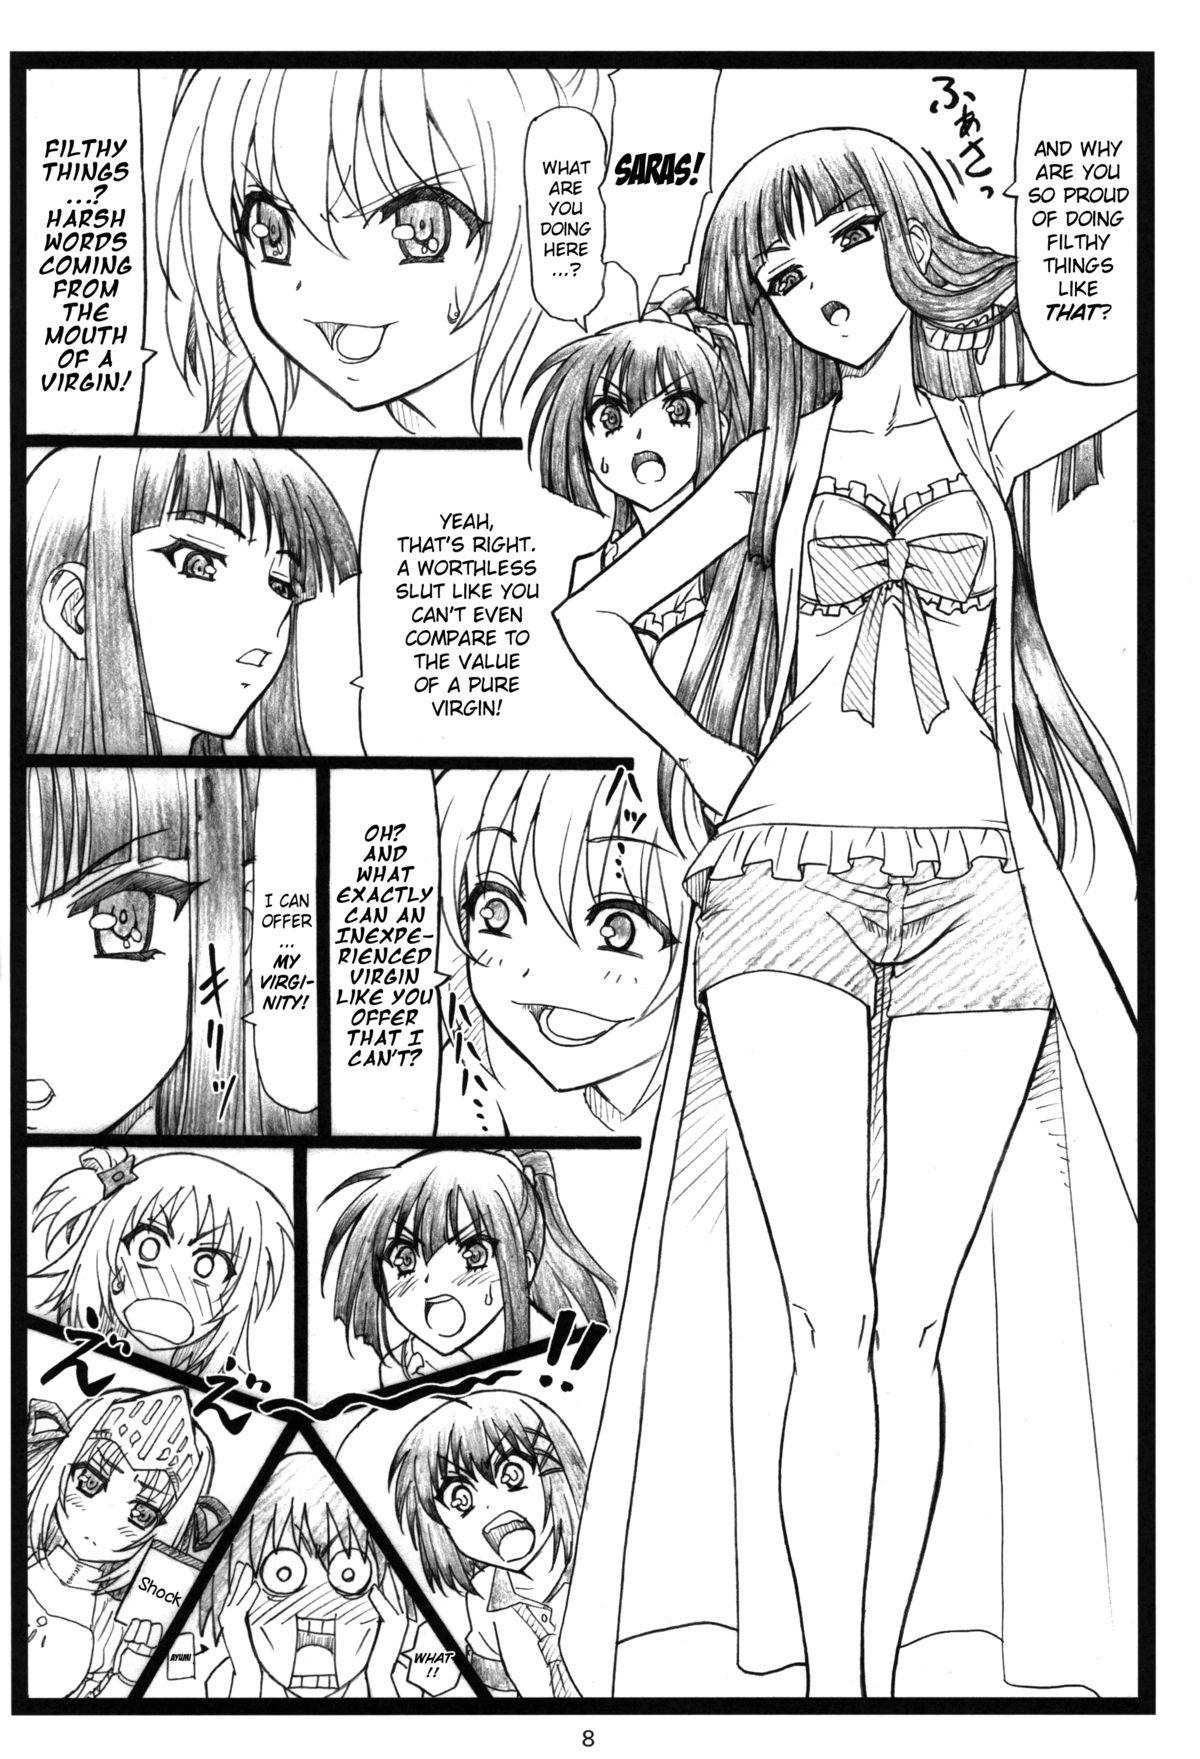 Sexo Shaanashi Da Na! - Kore wa zombie desu ka Spying - Page 7